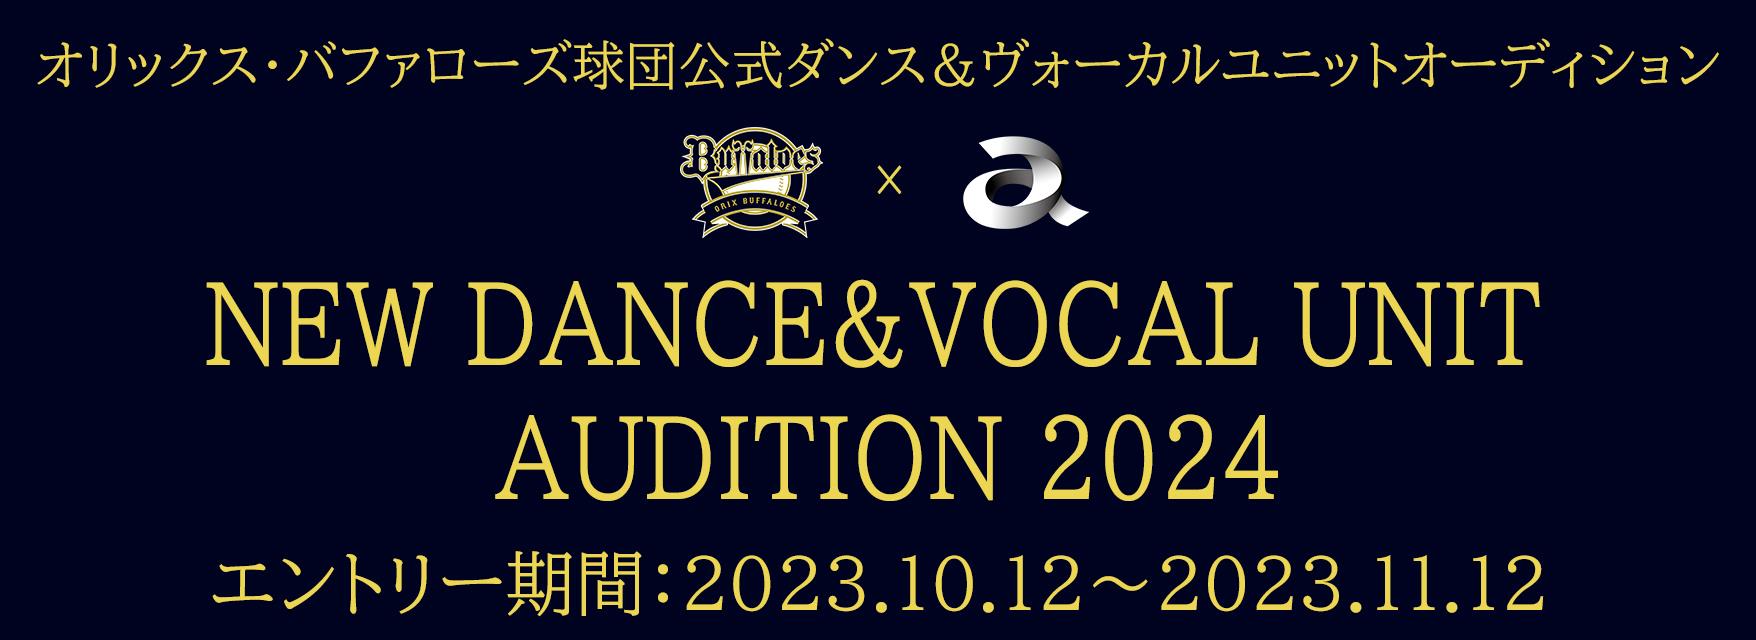 オリックス・バファローズ × エイベックスNEW DANCE&VOCAL UNIT AUDITION 2024